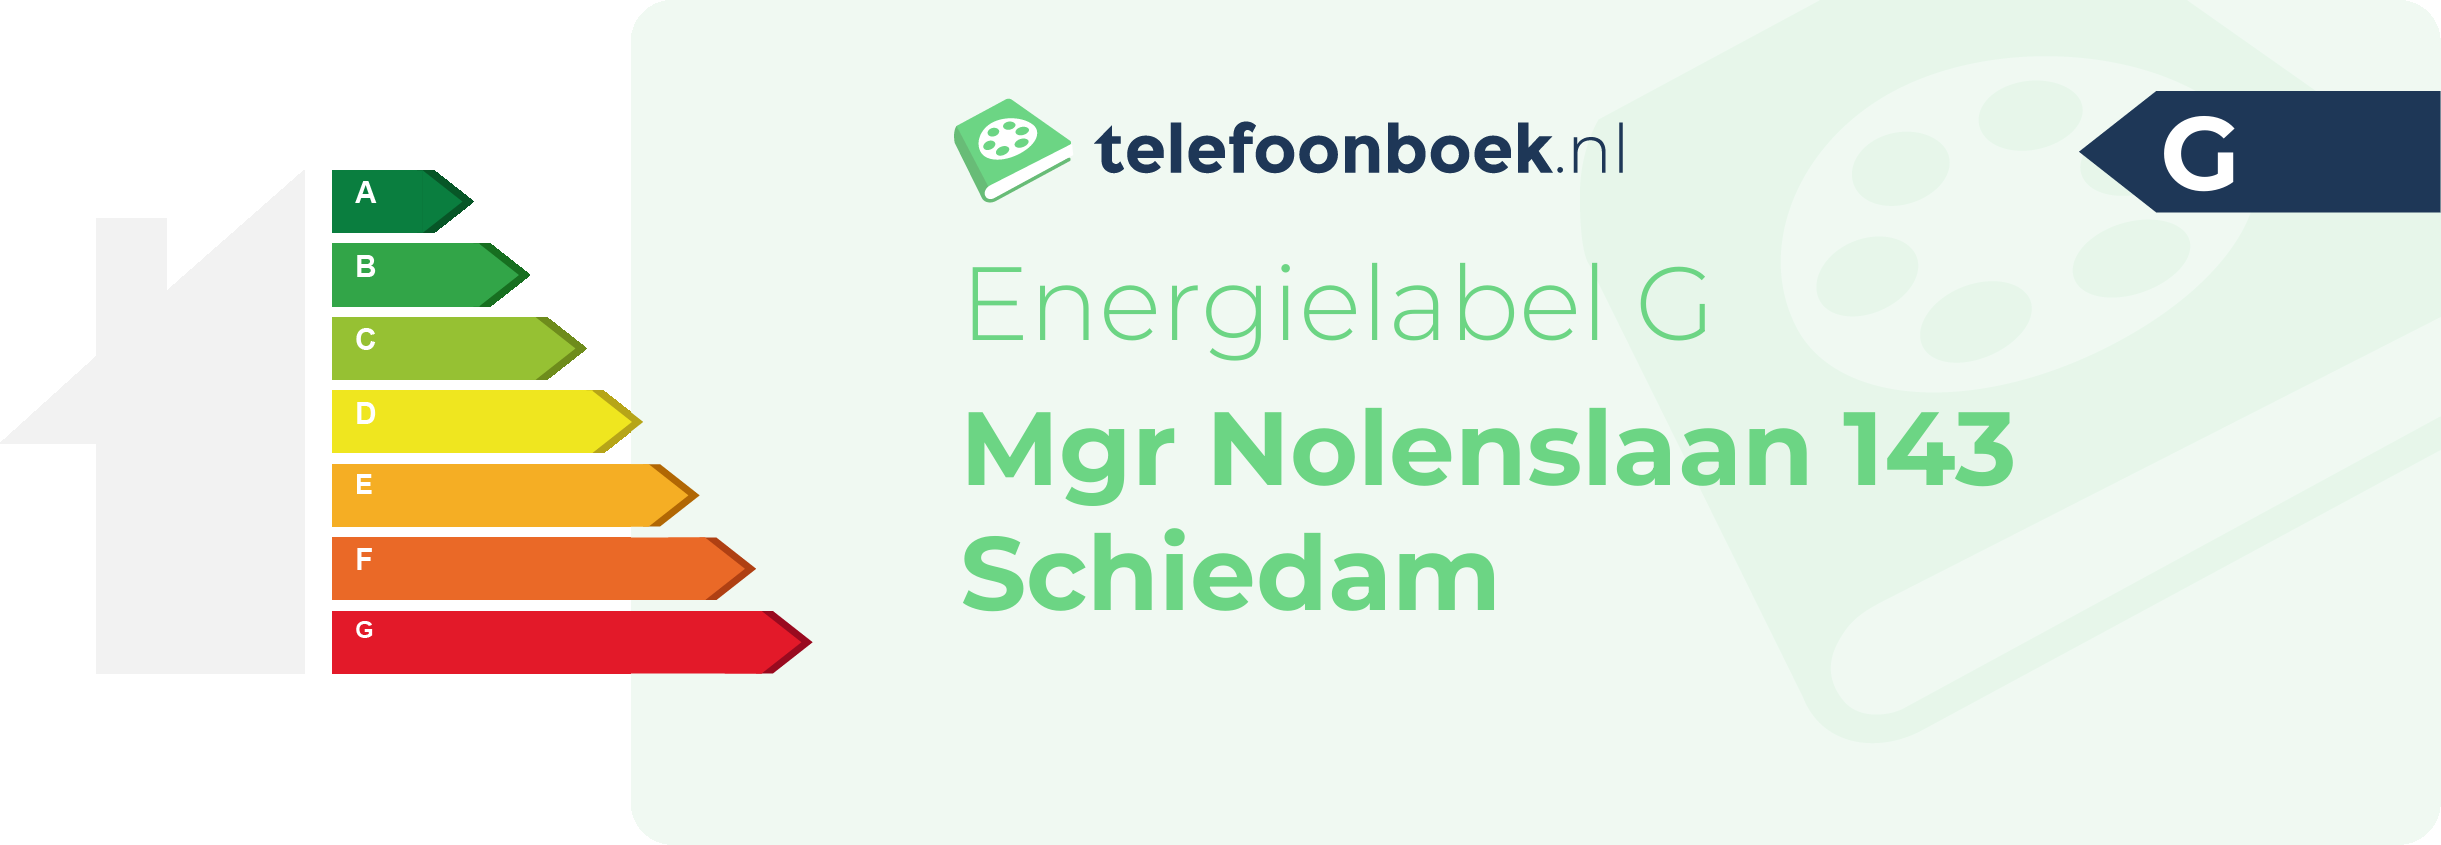 Energielabel Mgr Nolenslaan 143 Schiedam